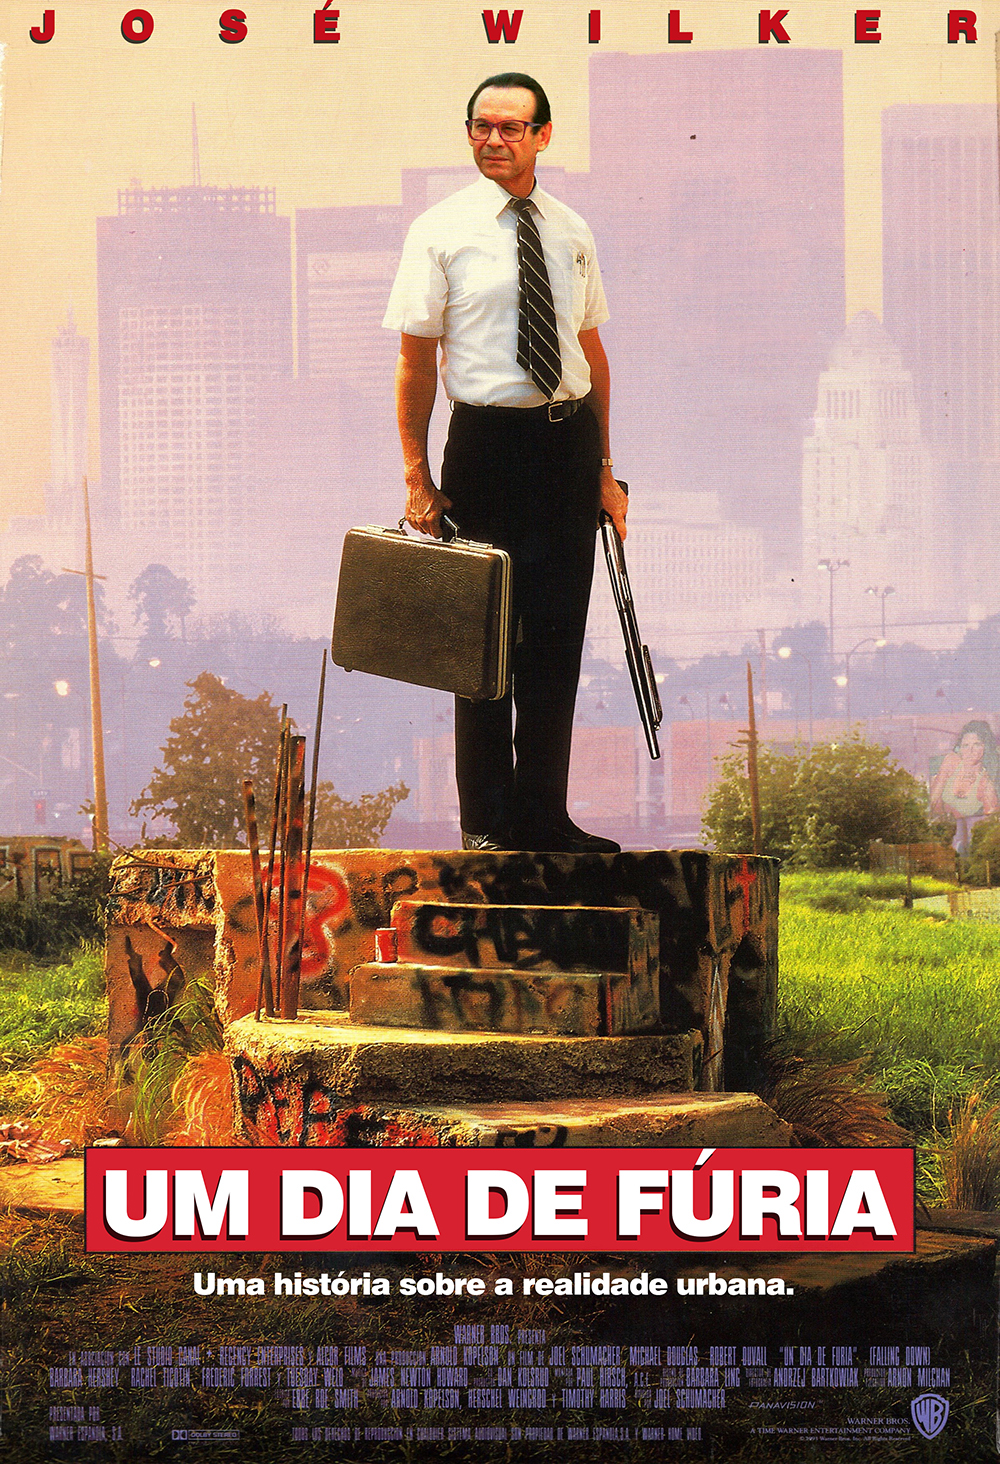 Cinema cartaz poster brasileiro Rodrigo Santoro john wick movie Lázaro Ramos atores photoshop